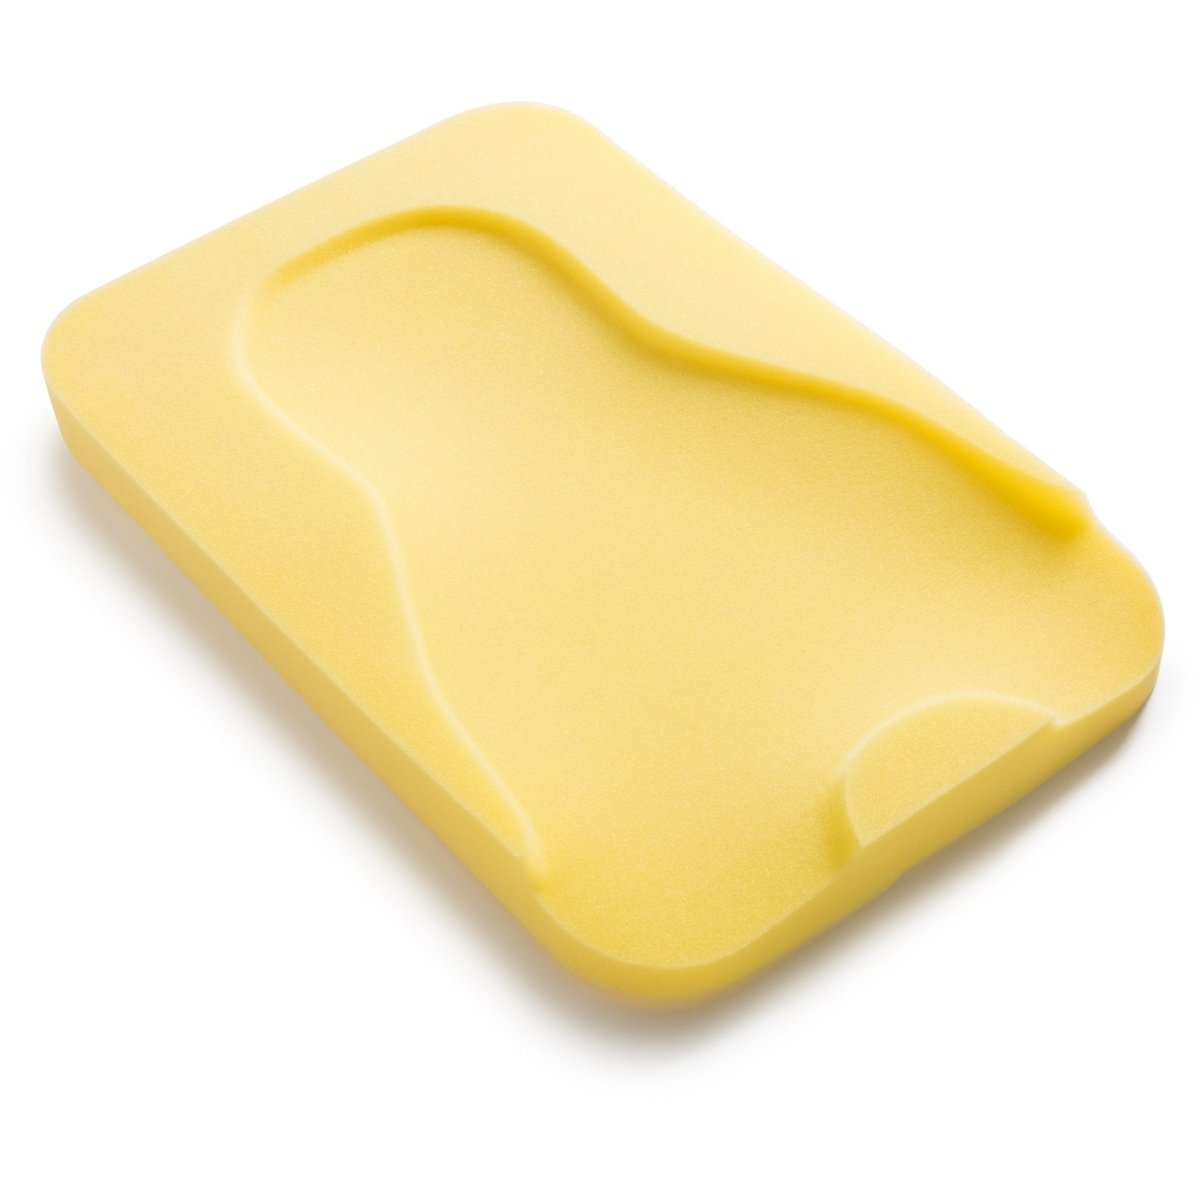 Summer Infant Comfy Bath Sponge - Yellow - 08248F